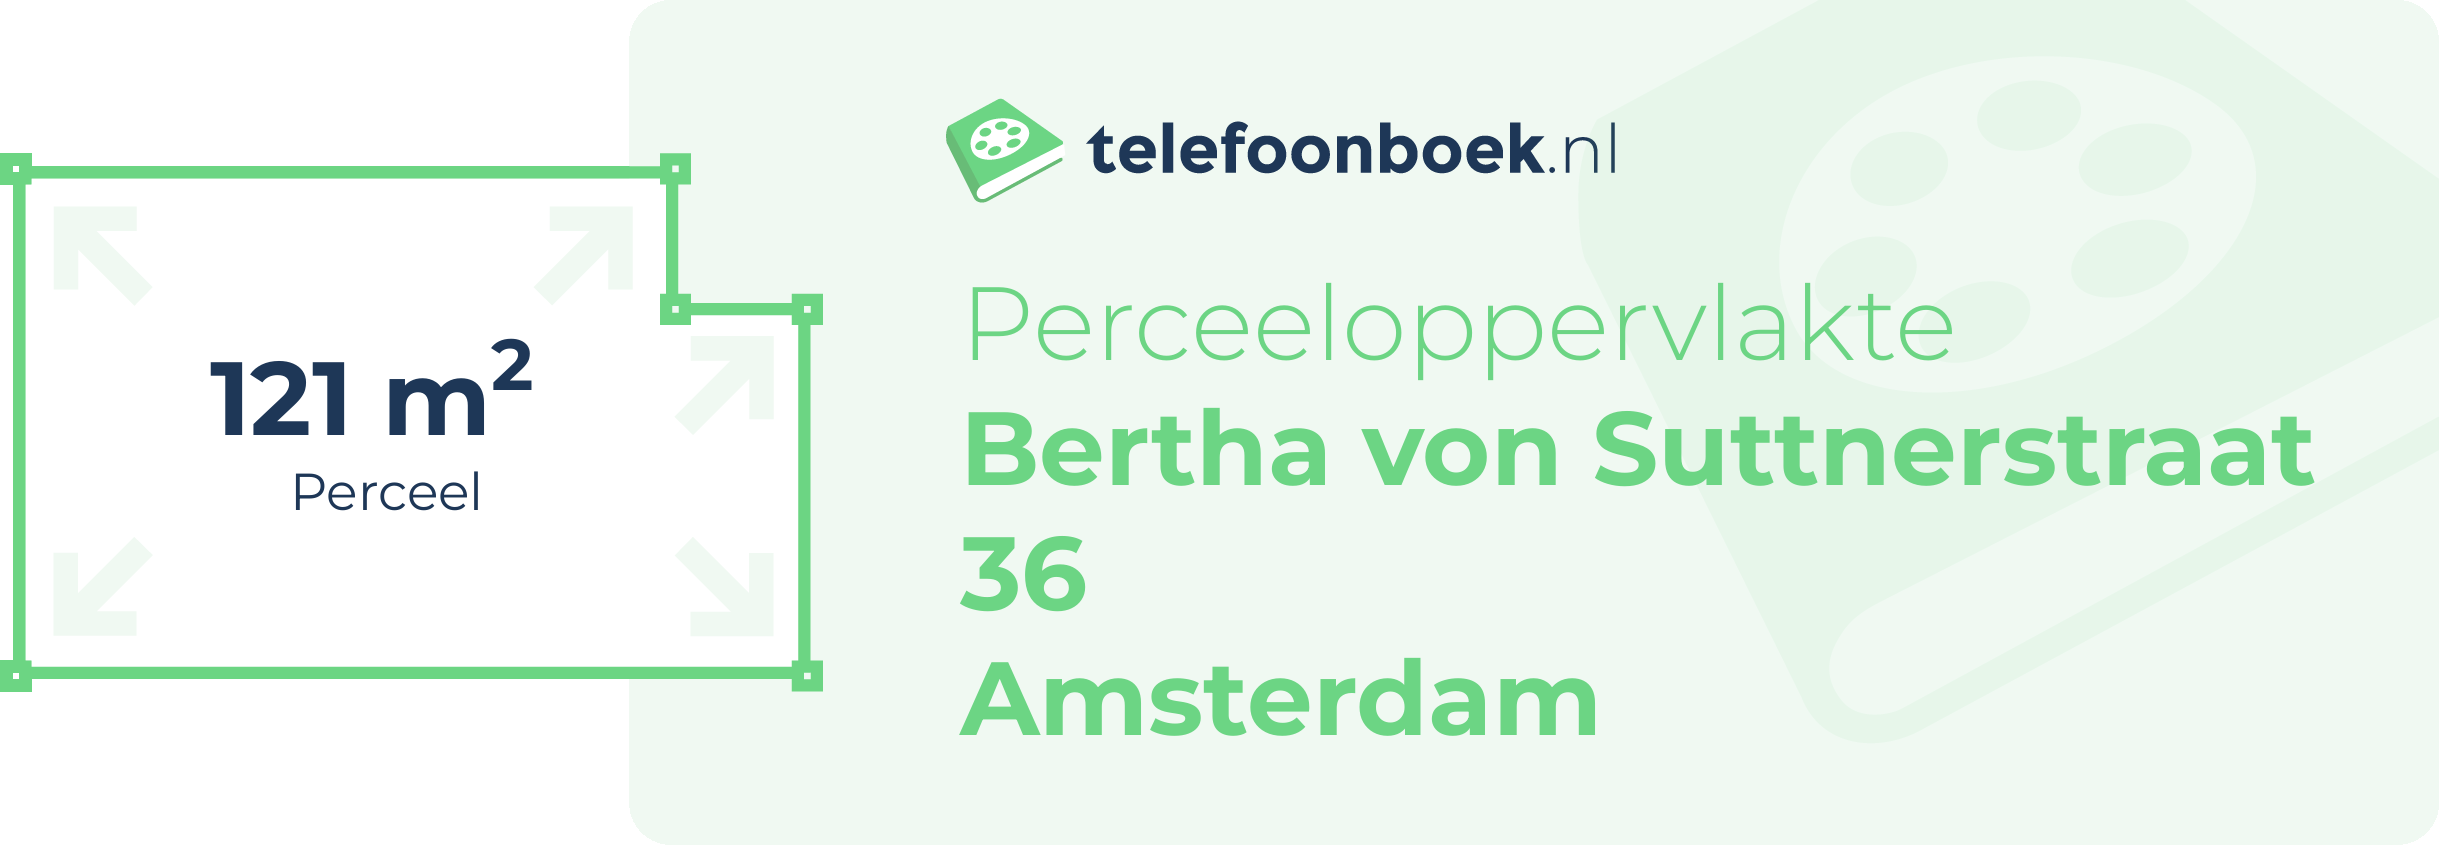 Perceeloppervlakte Bertha Von Suttnerstraat 36 Amsterdam